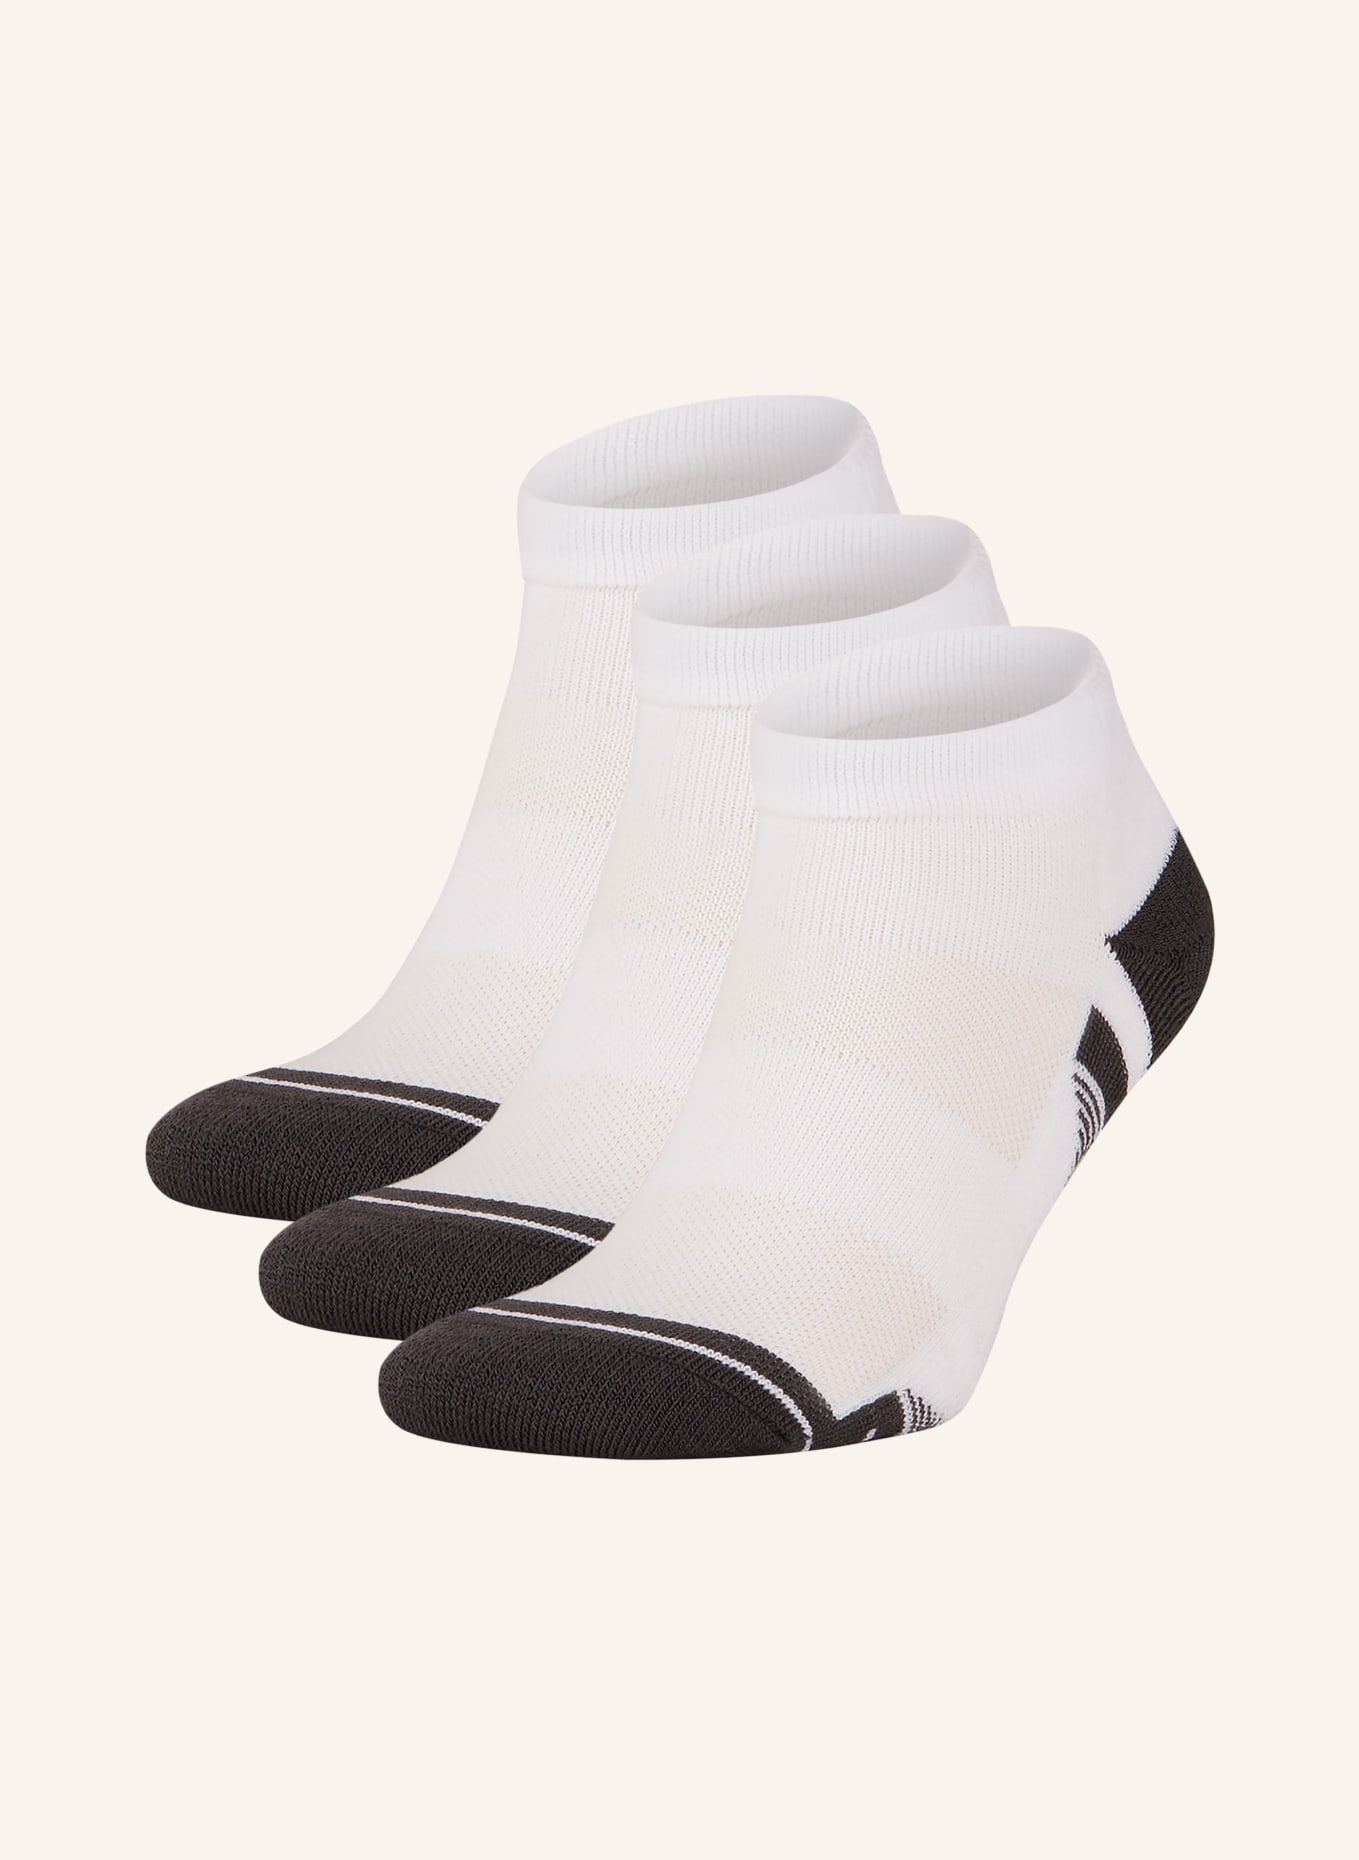 UNDER ARMOUR 3er-Pack Socken PEROFMRANCE 100 TECH in white